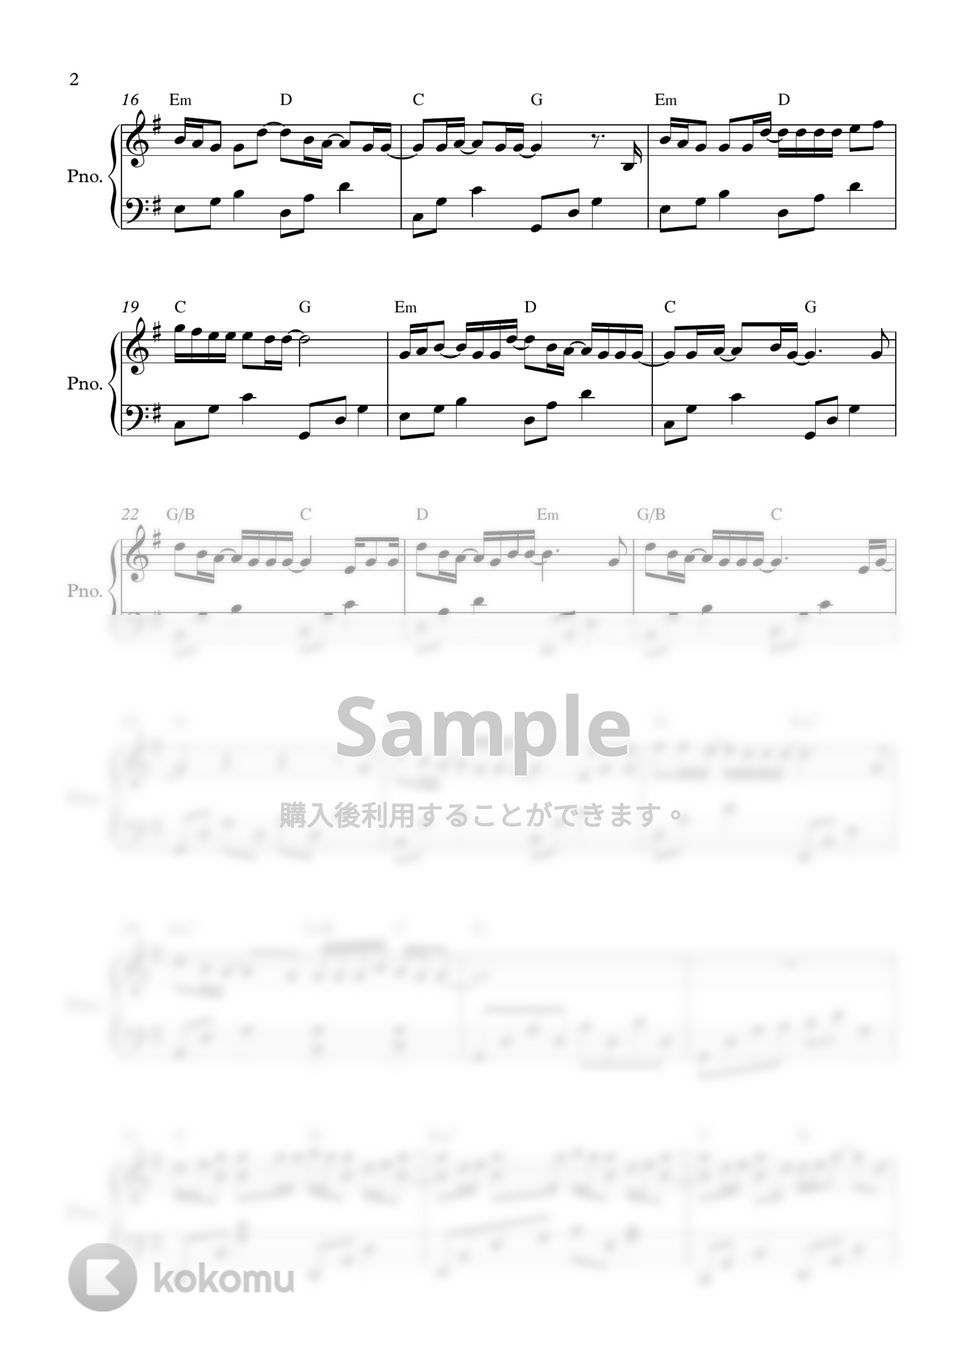 RADWIMPS - なんでもないや (Easy ver.) by PIANOiNU